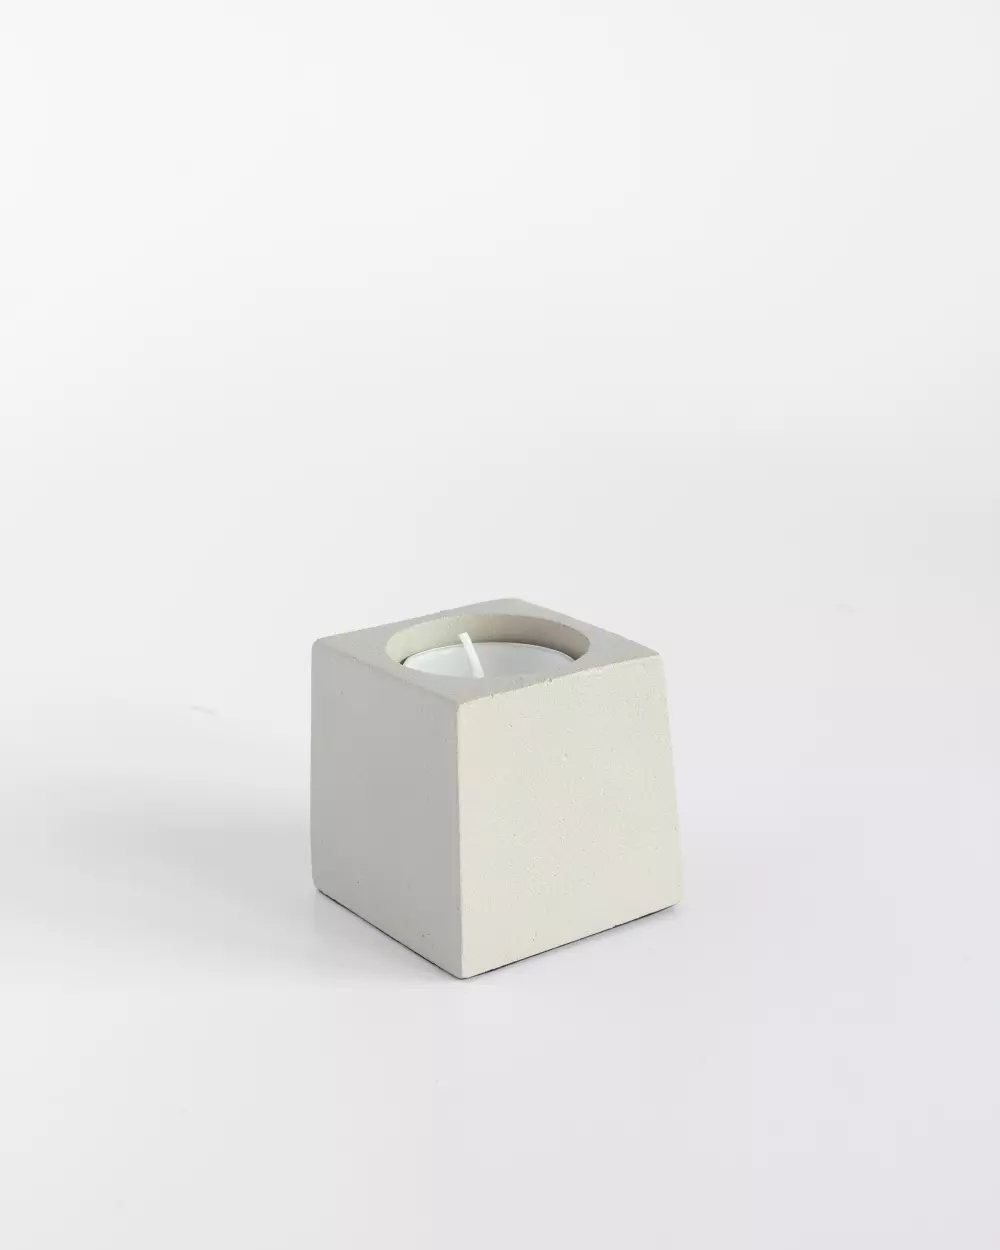 Cube T-lysholder 5cm Kitt, 7072347180885, 18088, Interiør, Telysholdere, Coming Home, Cube t-lysholder 5x5x6cm kitt